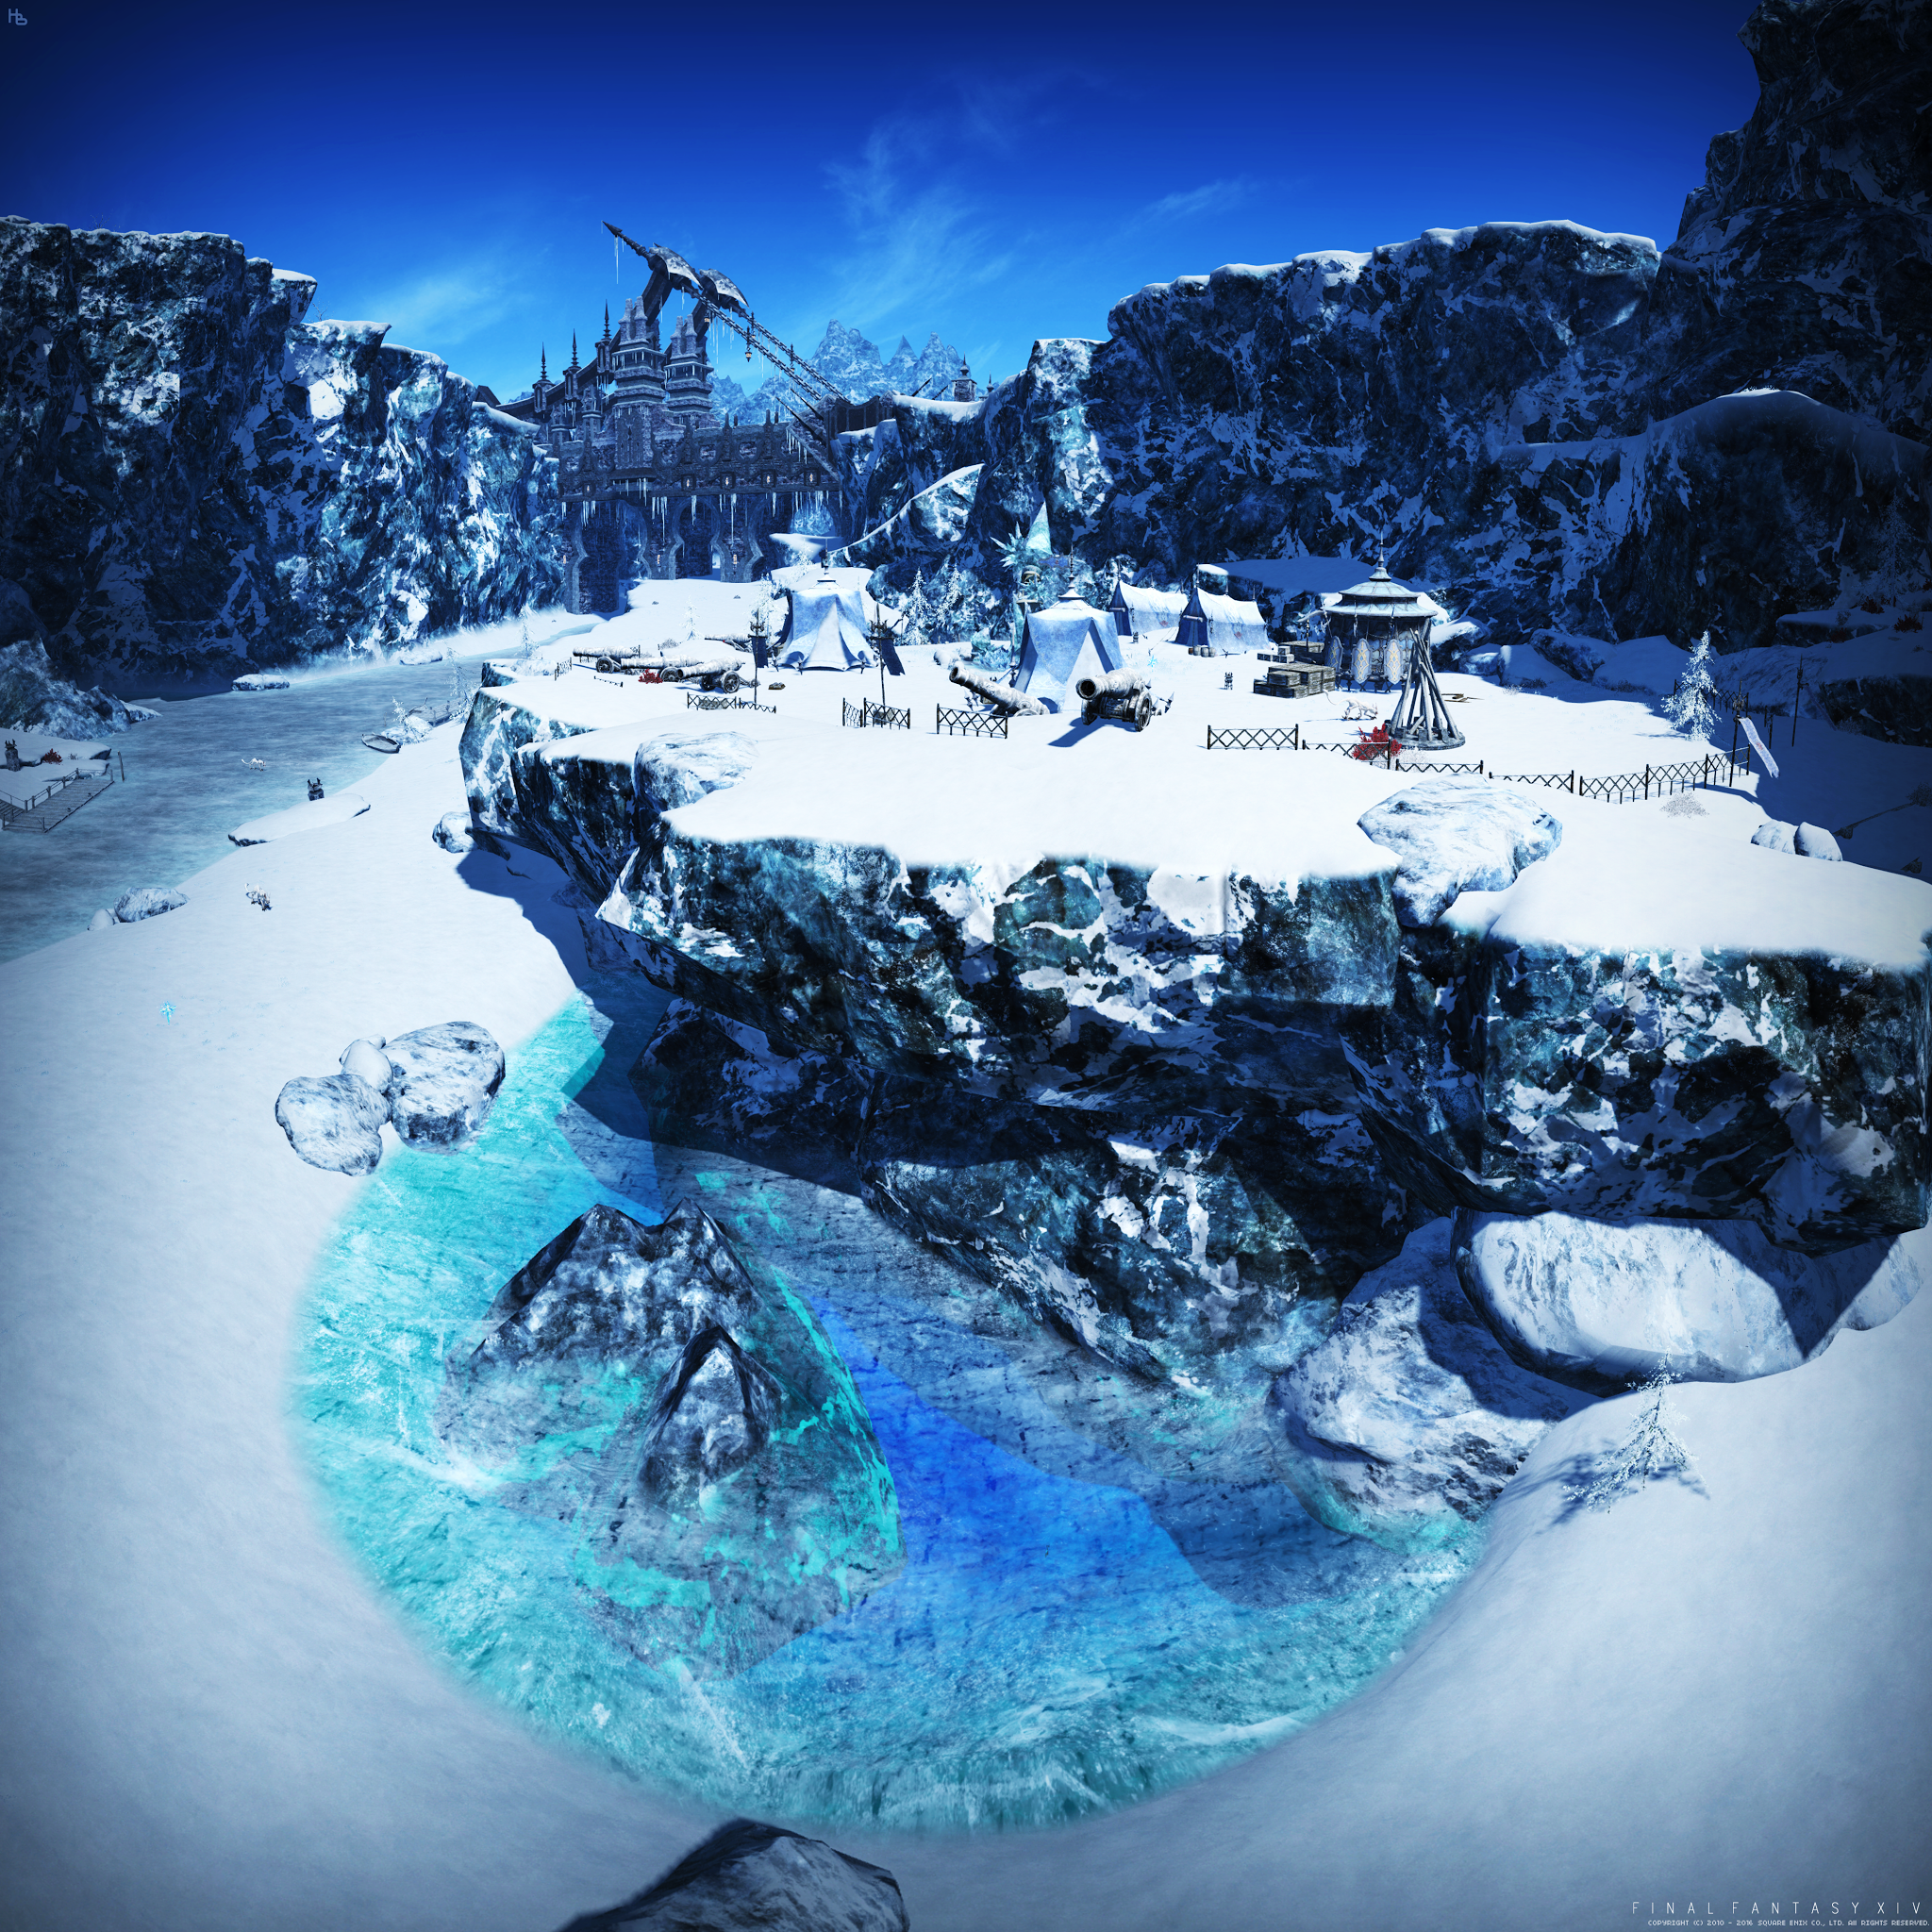 風景 クルザス西部高地に点在する特別綺麗な氷の池と他の風景 あああのあ